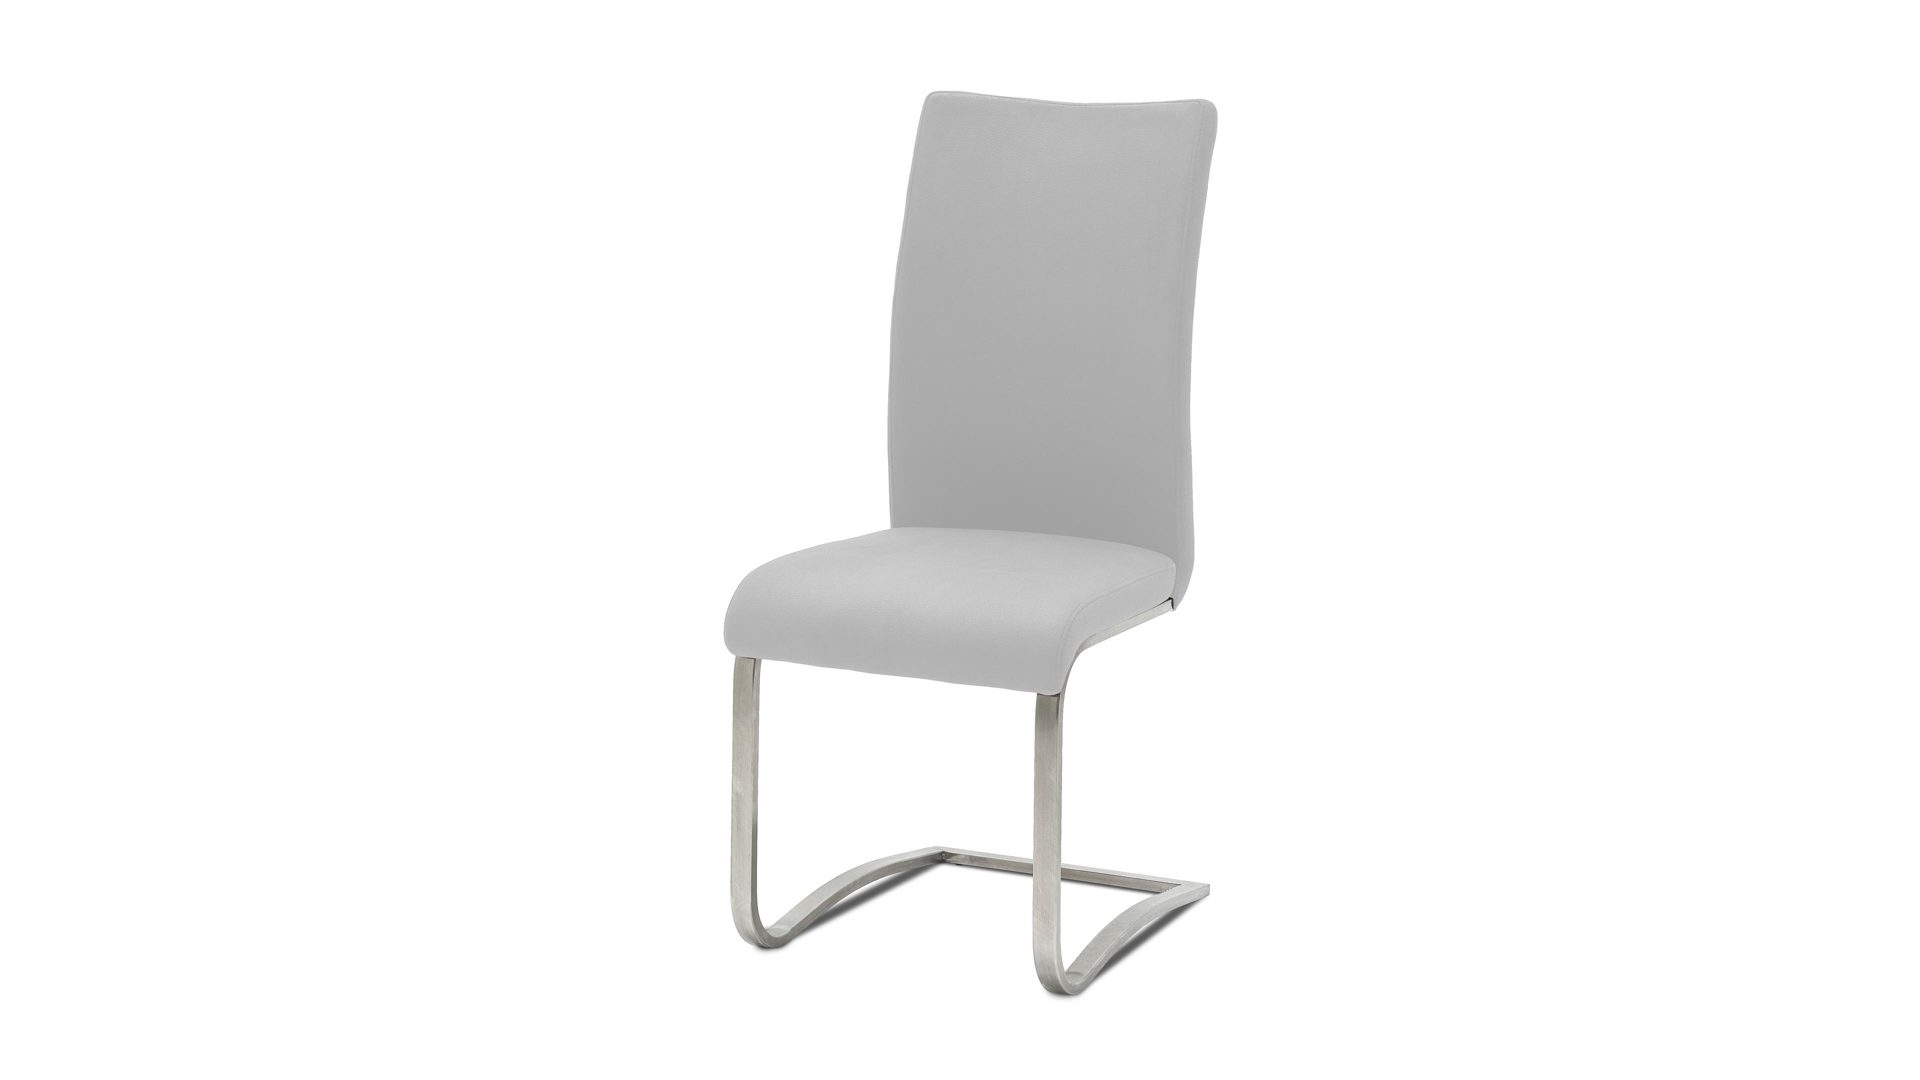 Schwingstuhl Mca furniture aus Leder in Weiß Leder-Schwingstuhl als edles Sitzmöbel weißes Leder ELW & Edelstahl